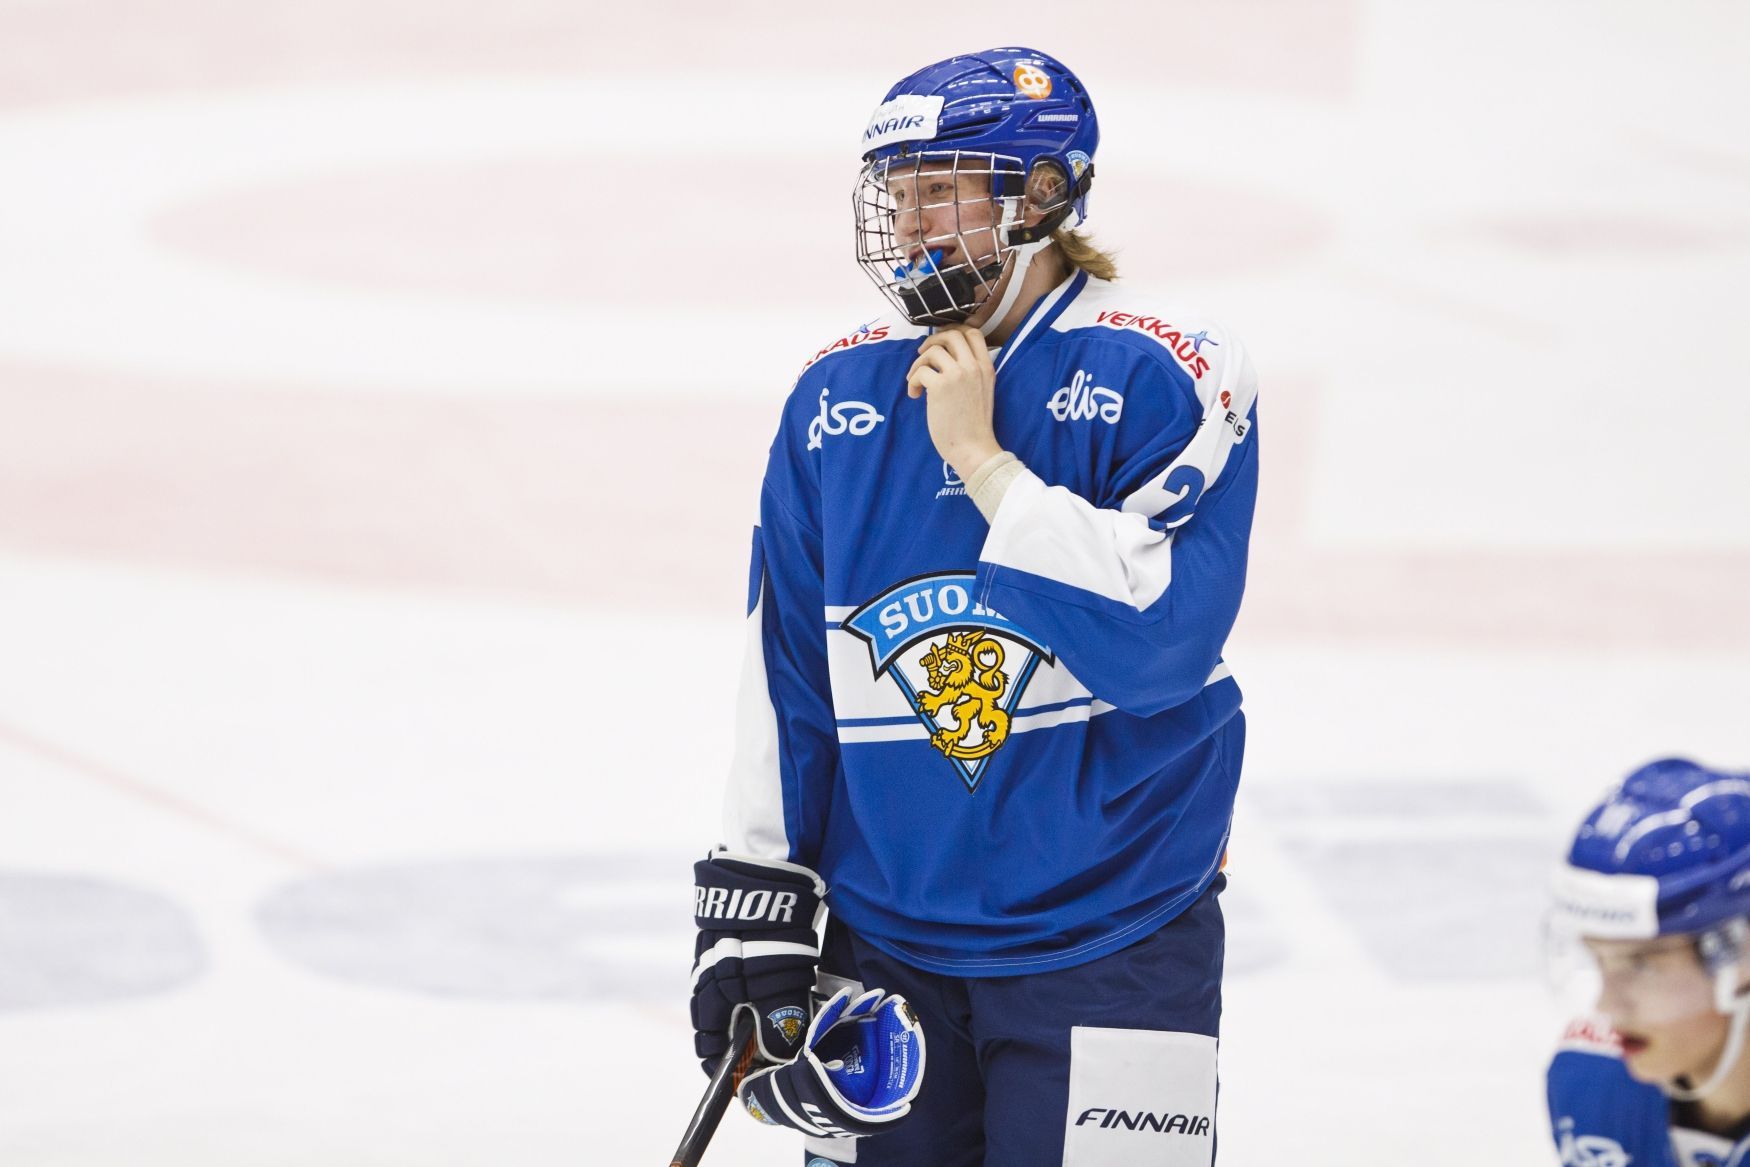 Finská hokejová reprezentace, Patrik Laine